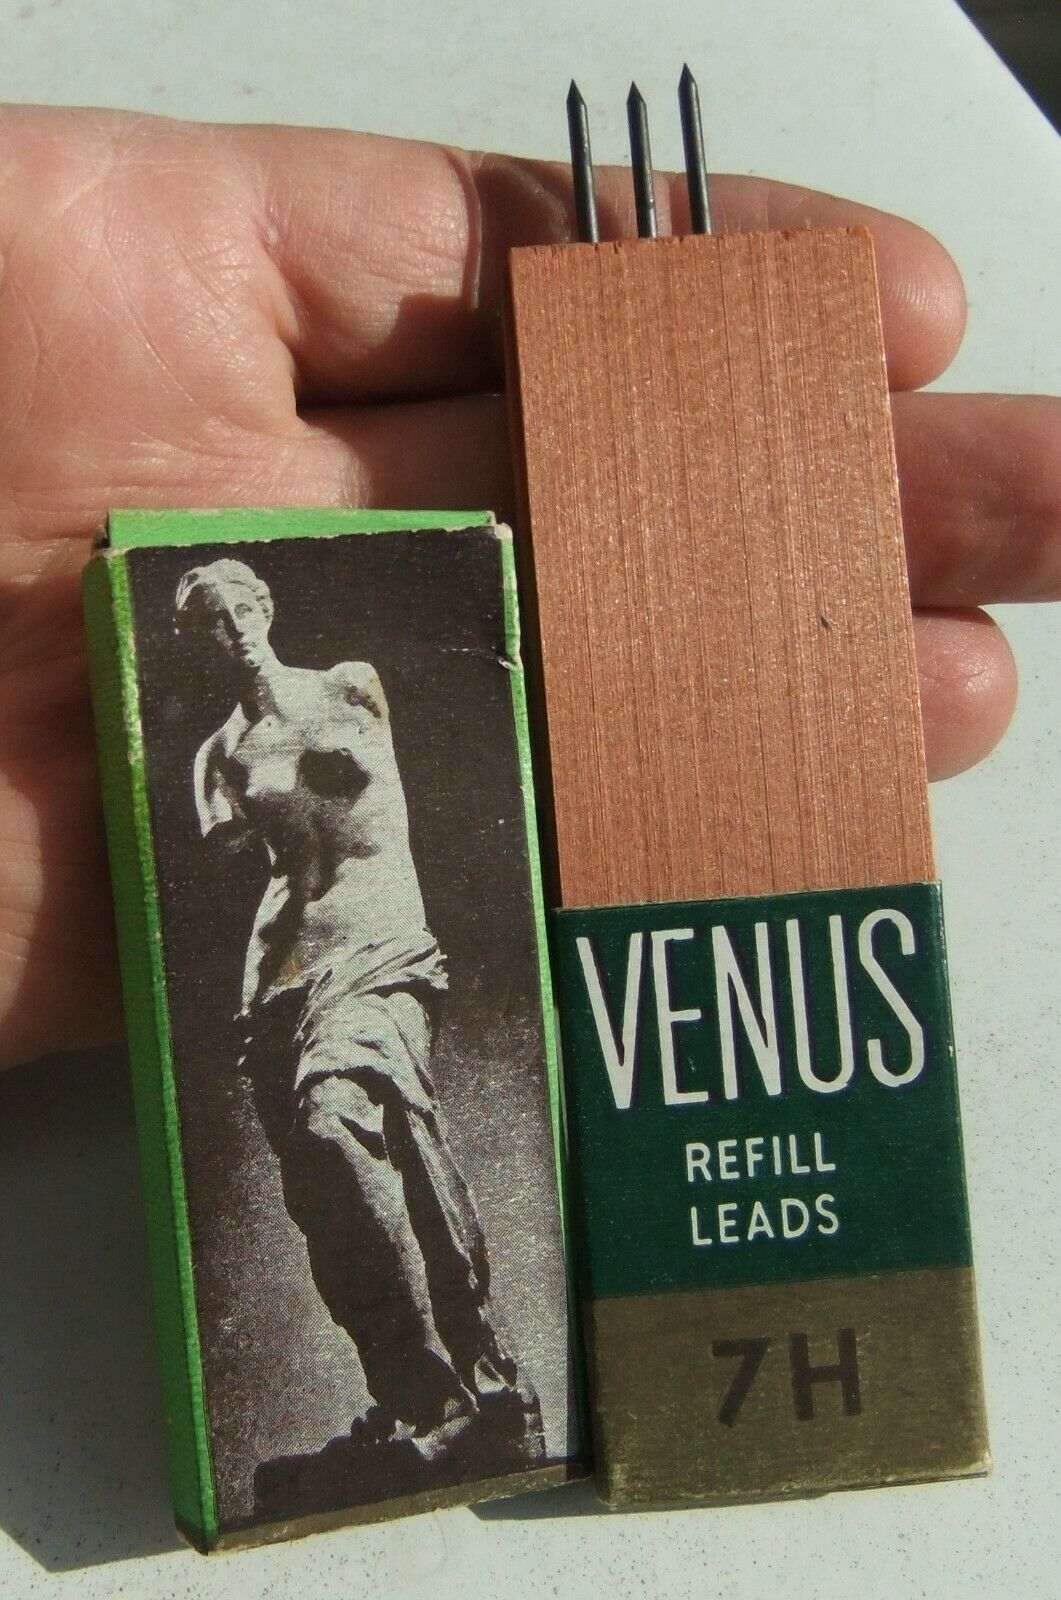 Vntg Pack Of Venus Refill Leads 7h In Cedar Box With Cardboard Sleeve 3 Unused